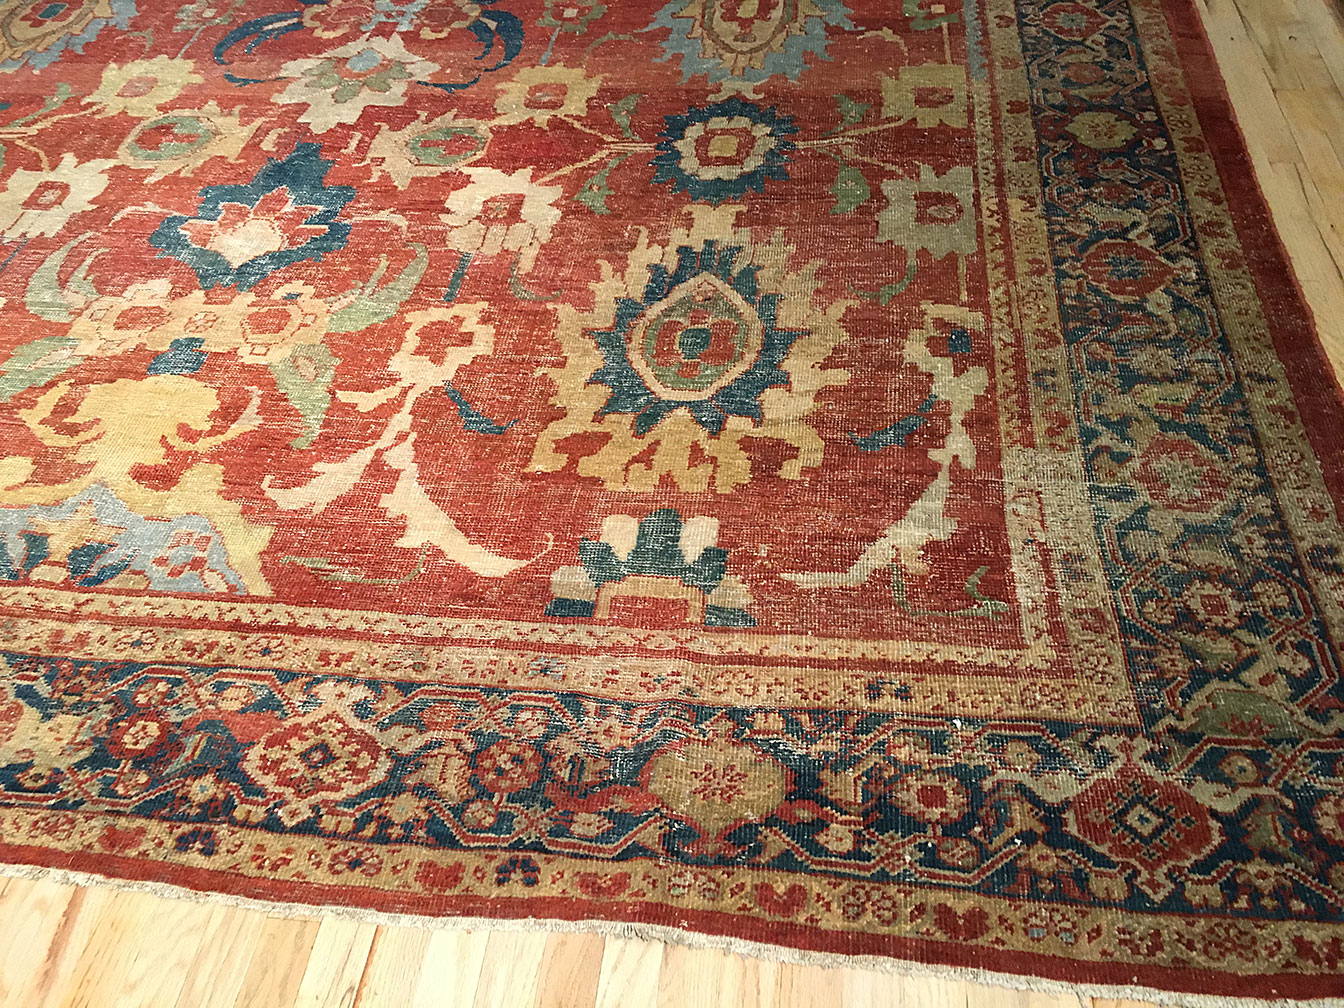 Antique sultan abad Carpet - # 51419